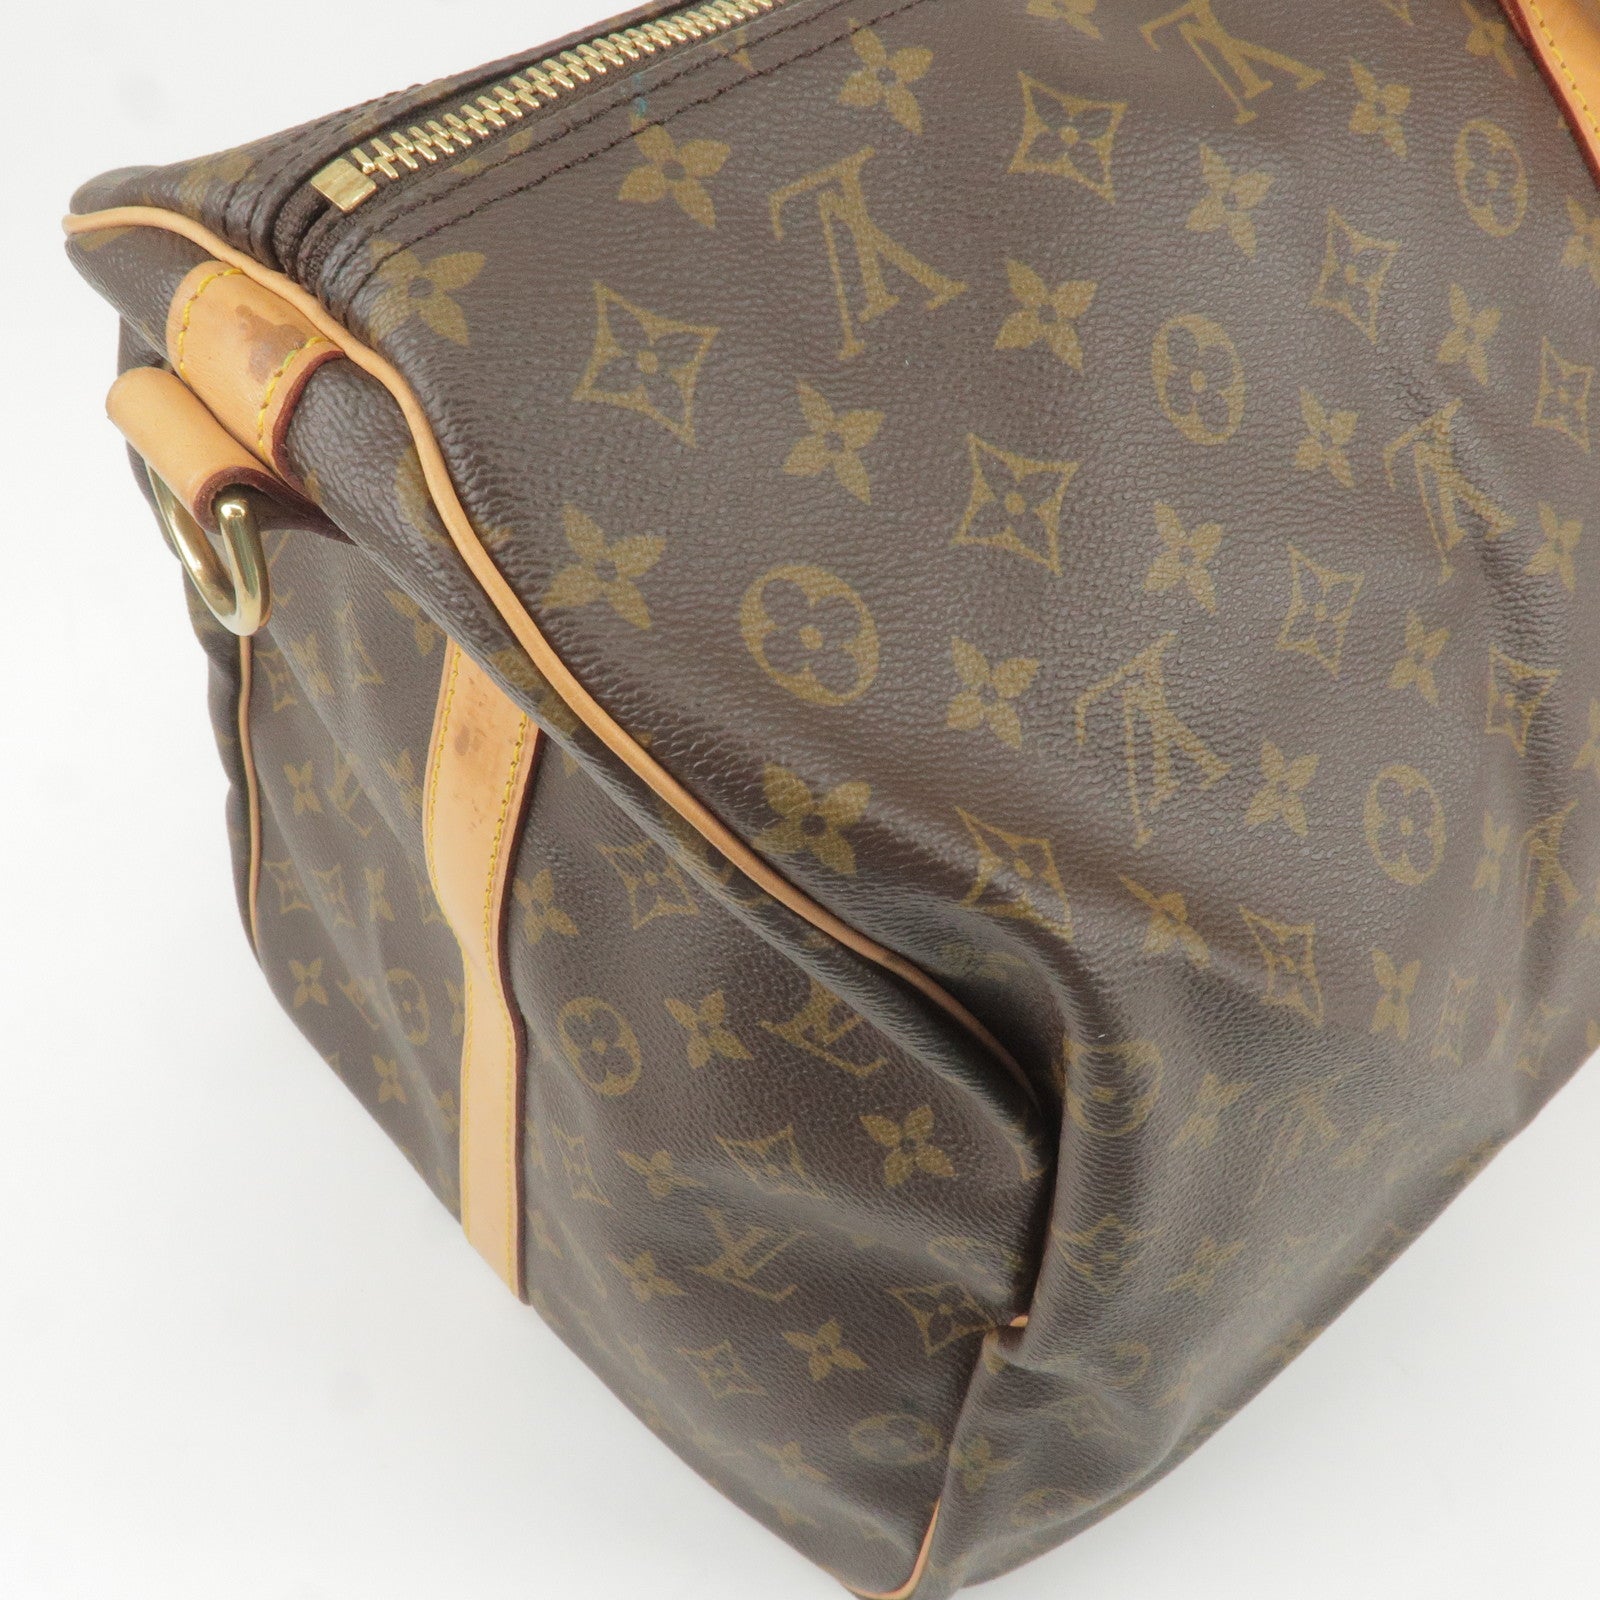 Louis Vuitton 2008 Pre-owned Mini Monogram Mahina Shoulder Bag